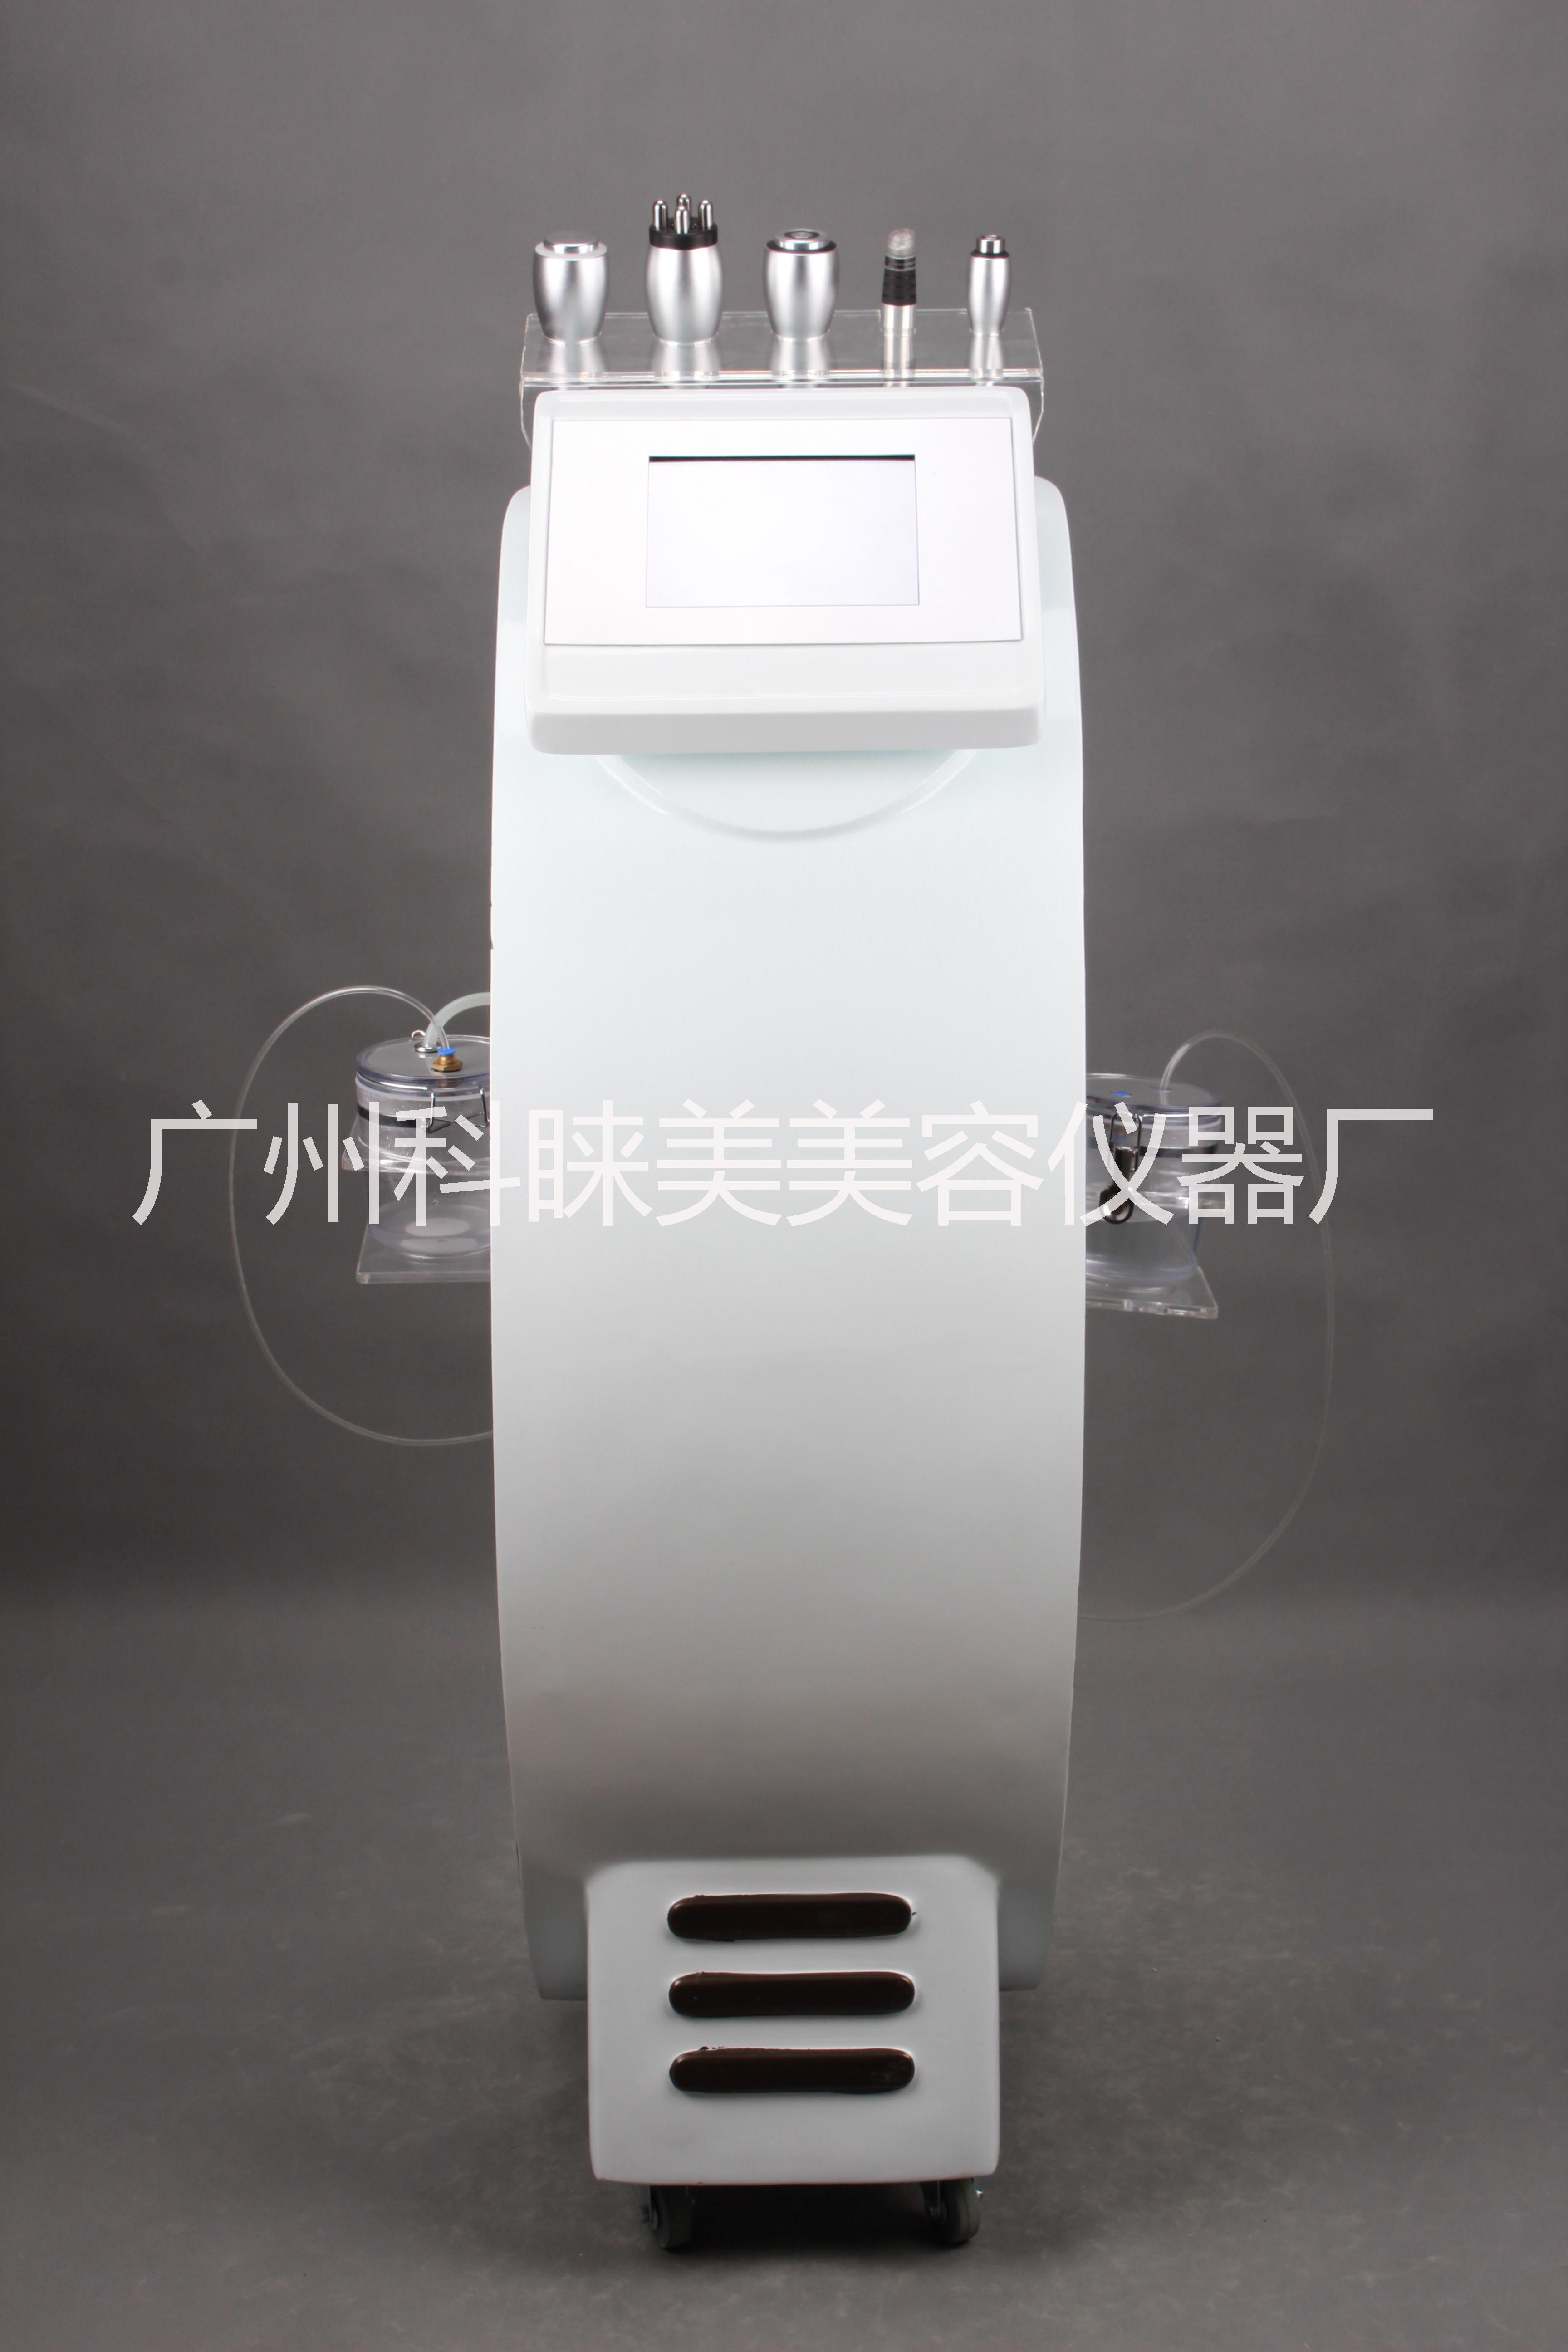 广州市水雕透析仪抗衰嫩肤面部补水美容仪厂家